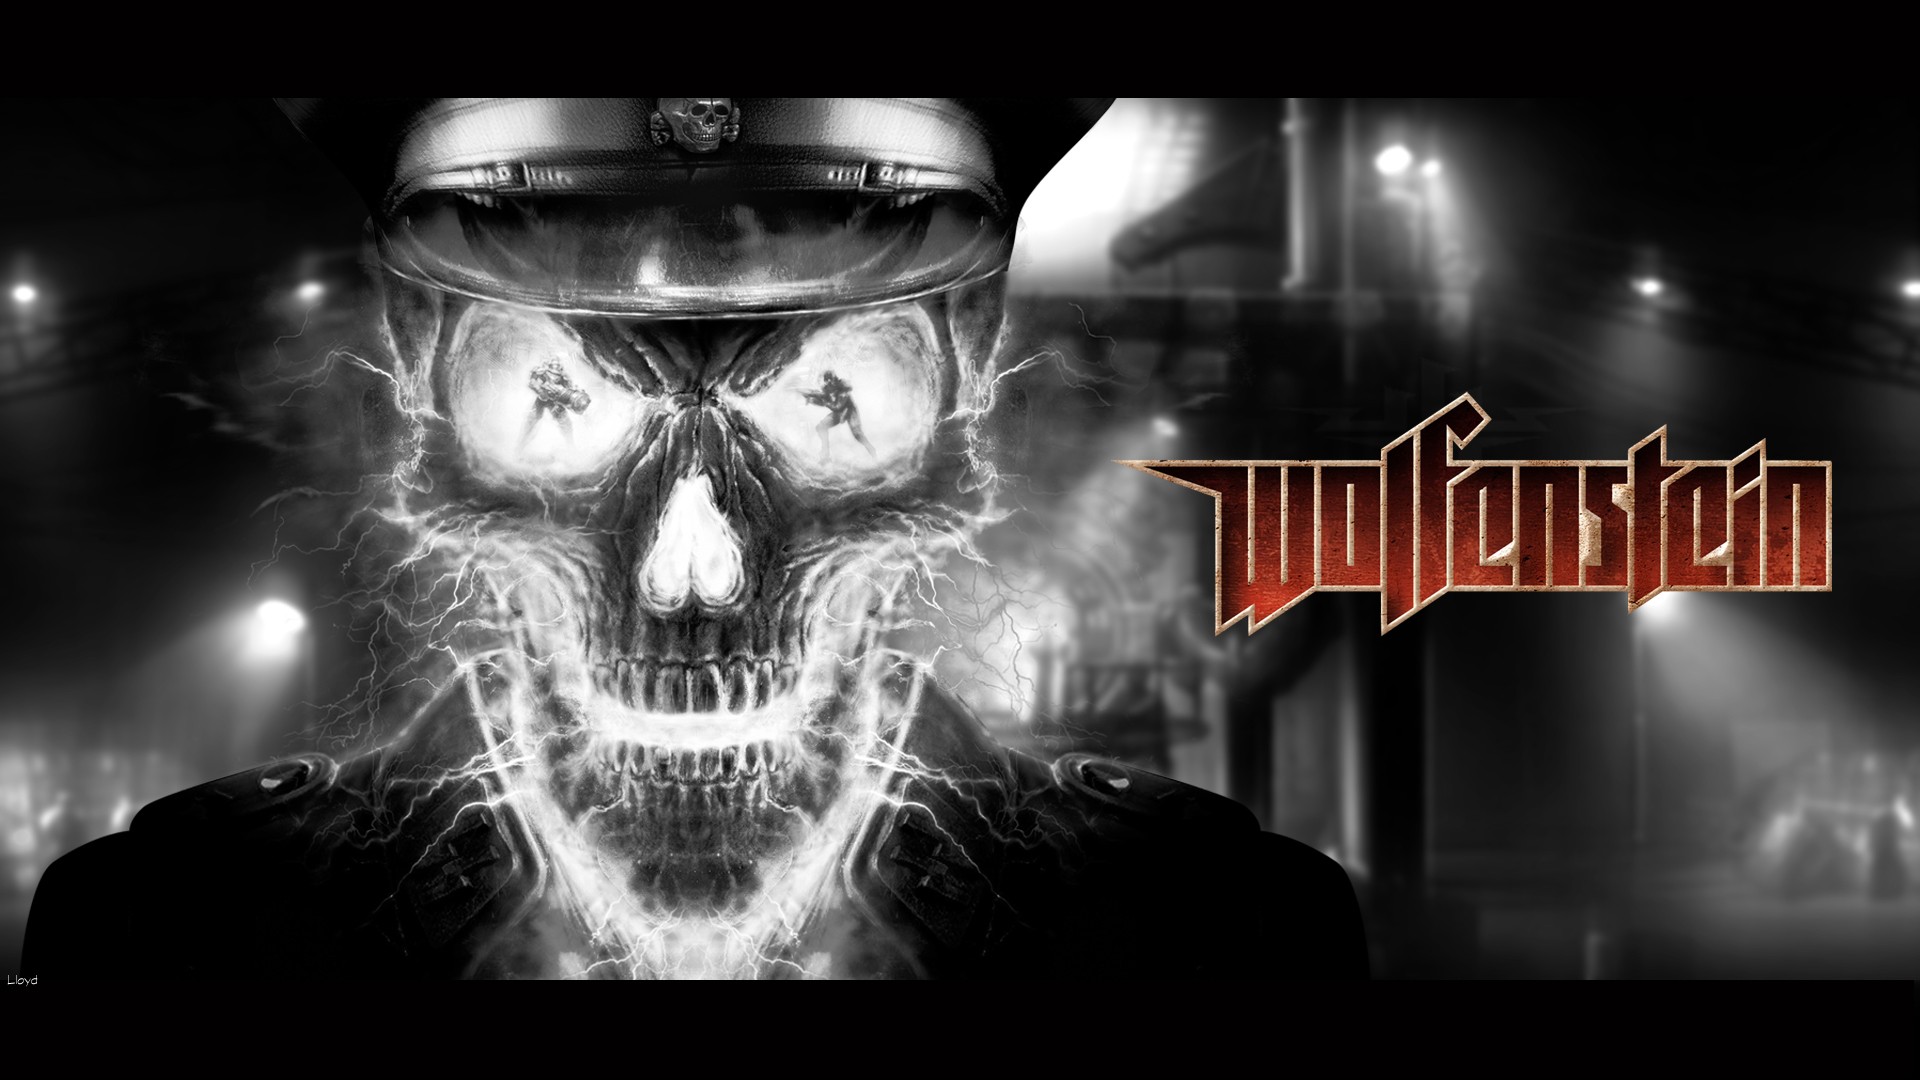 Video Game Wolfenstein (2009) HD Wallpaper | Background Image